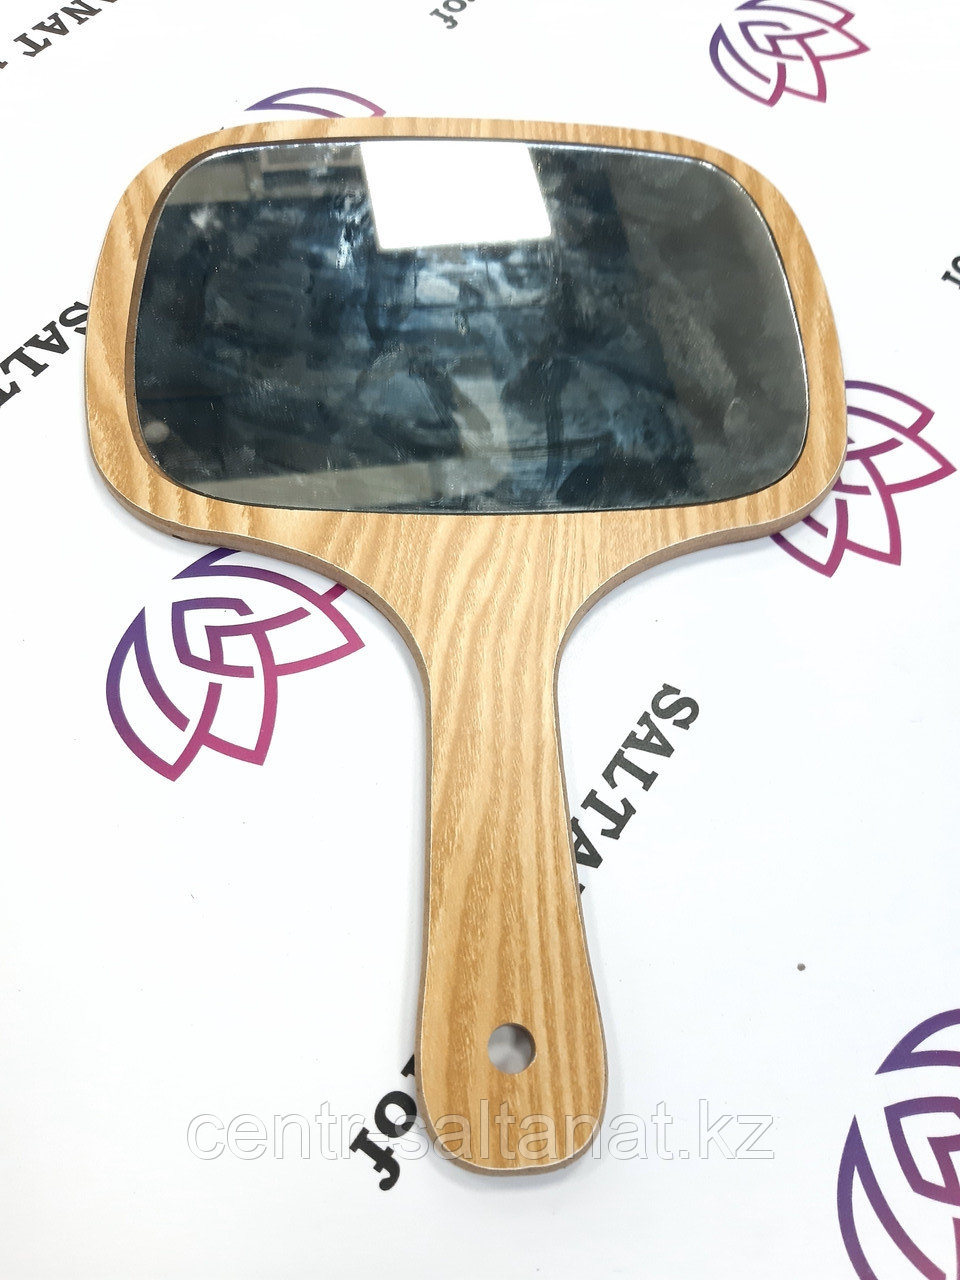 Зеркало парикмахерское заднего вида с ручкой деревянной